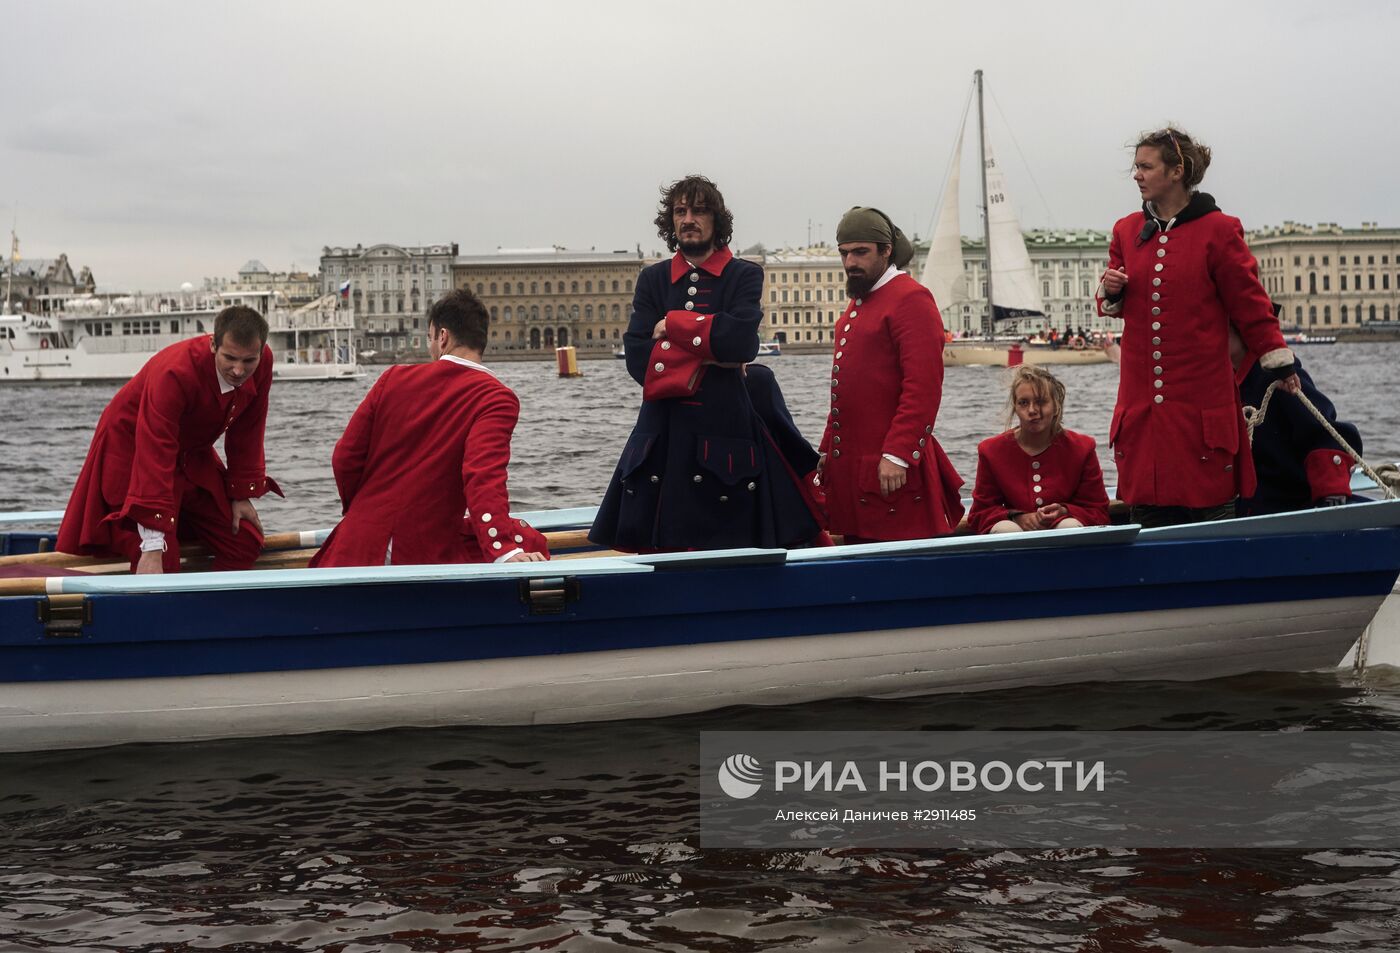 Санкт-Петербургский международный морской фестиваль